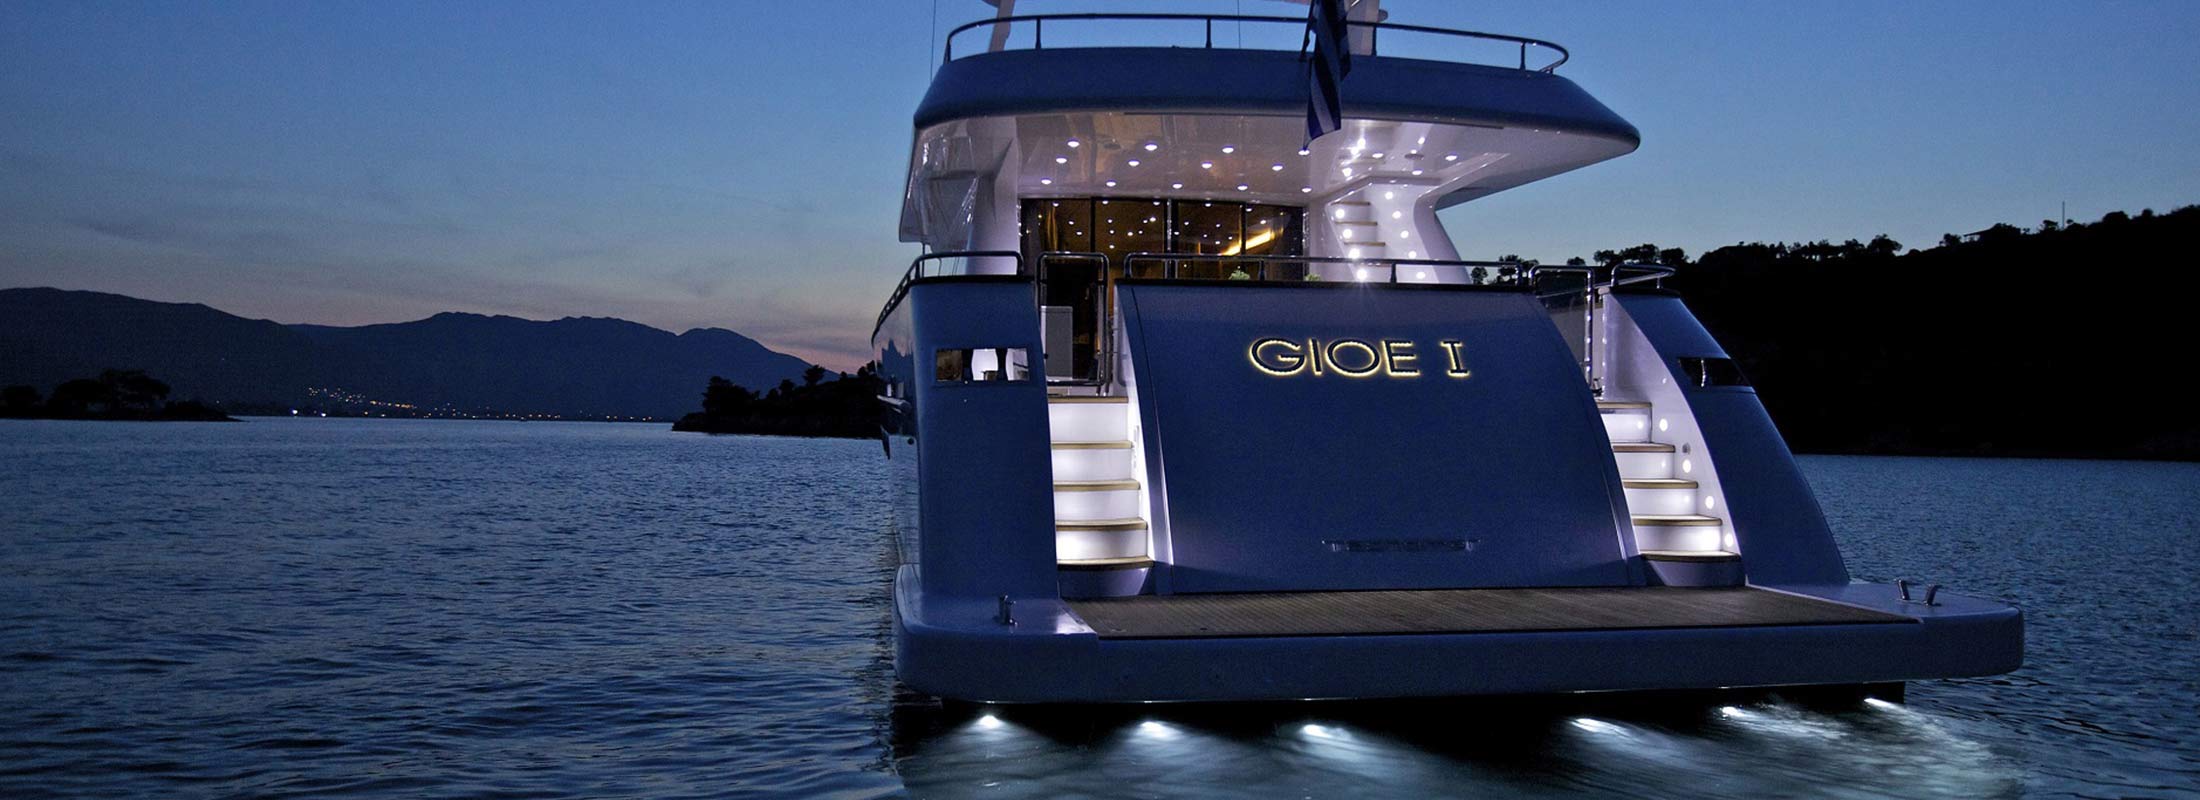 Gioe I Motor Yacht for Charter Mediterranean slider 2